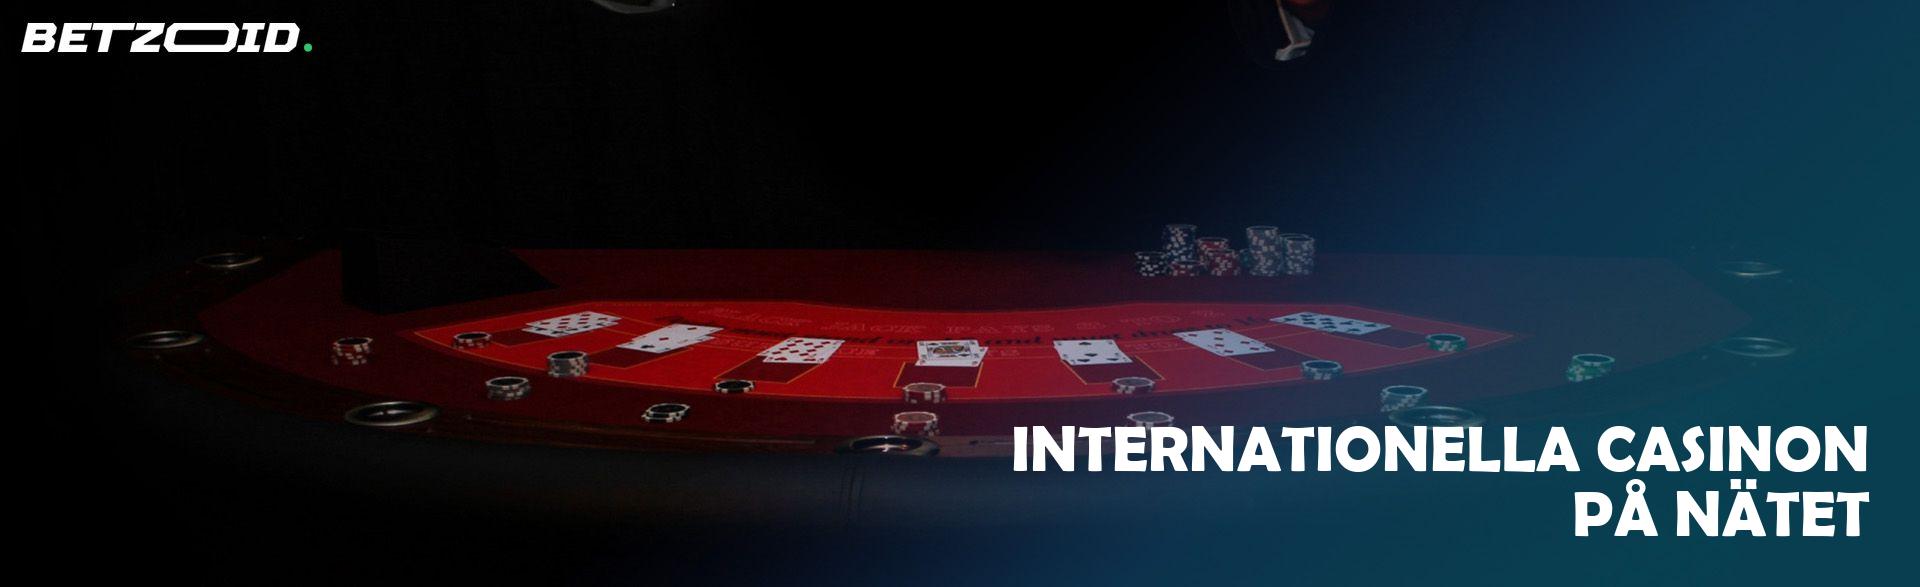 Internationella Casinon på Nätet.